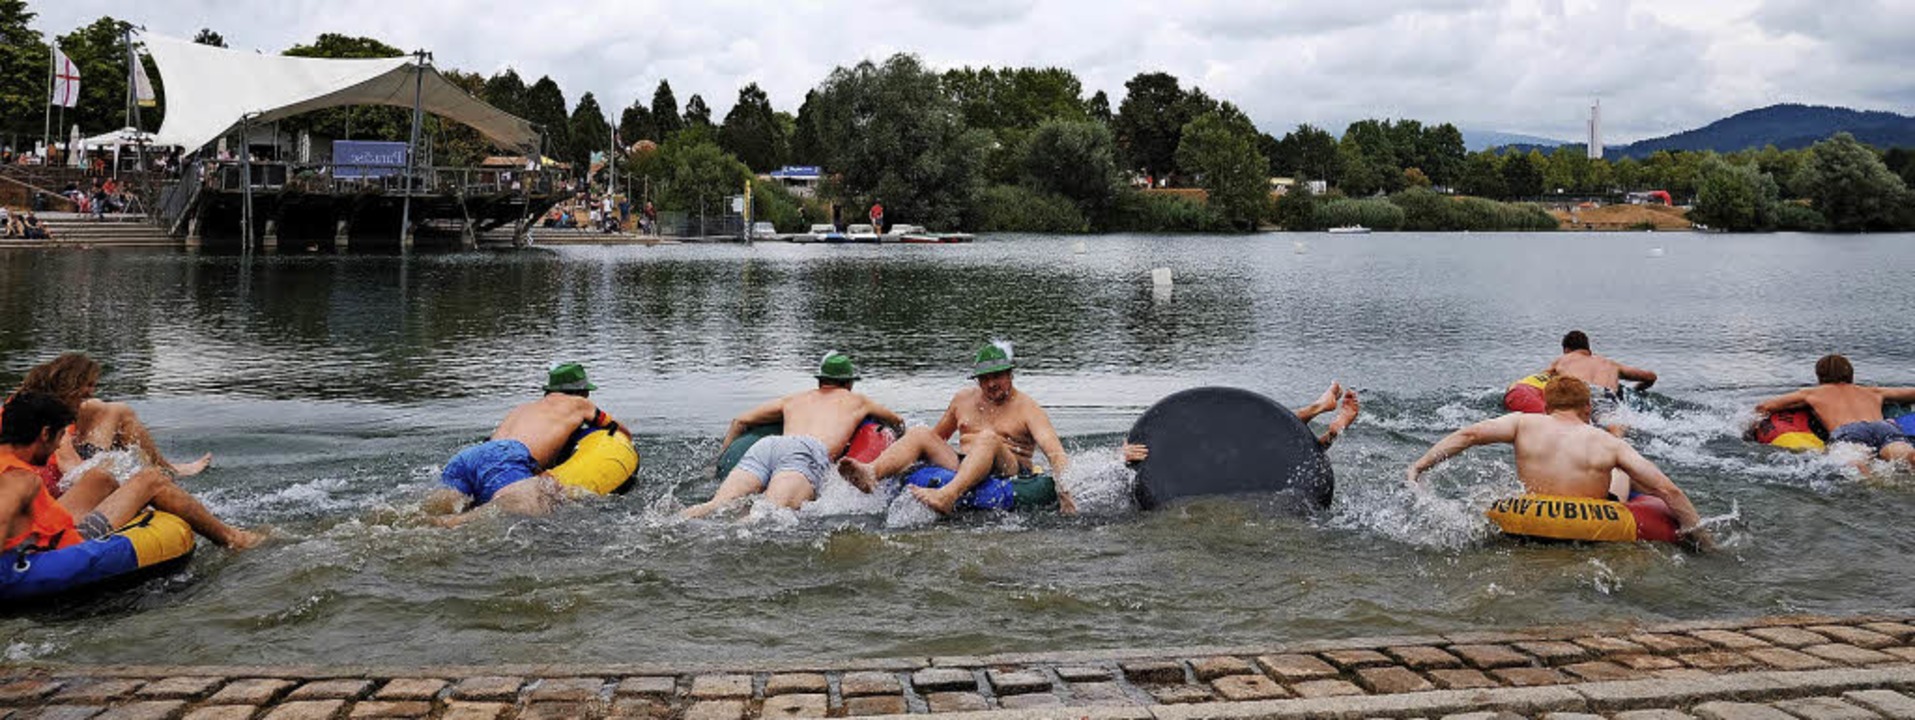 Feucht-fröhliches Vergnügen: Water-Tube-Challenge beim Seefest  | Foto: Miroslav Dakov